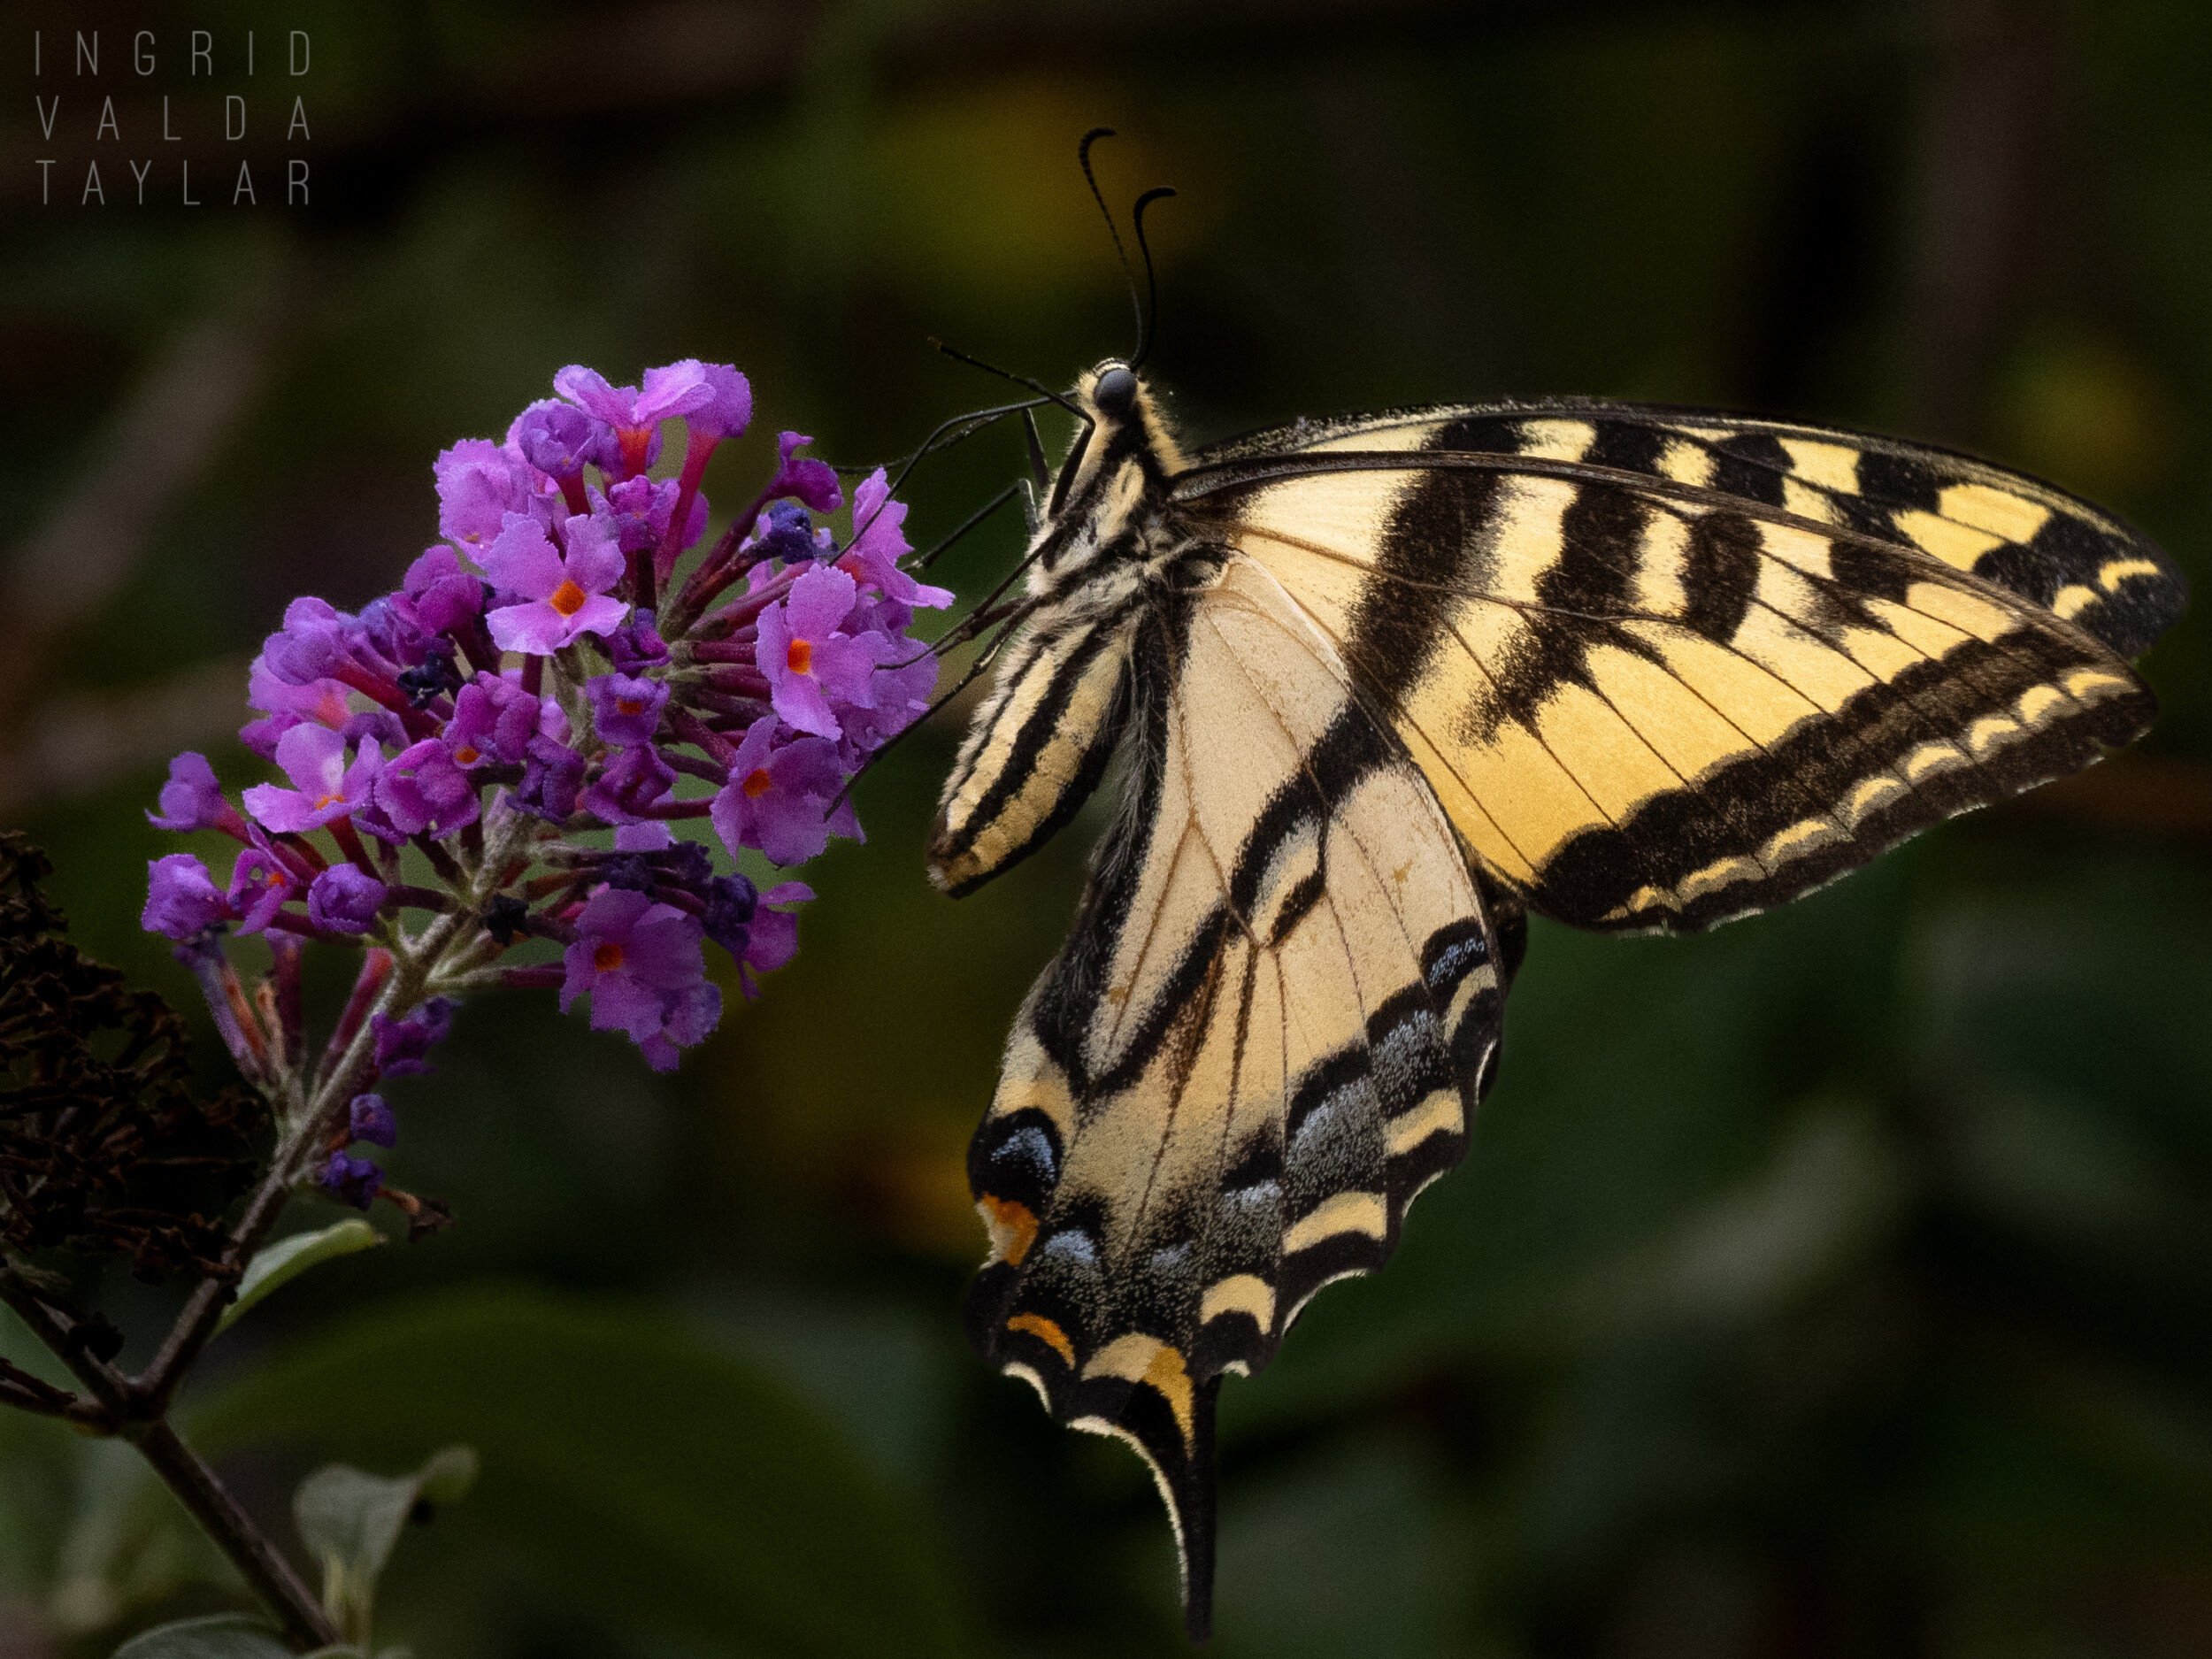 Swallowtail Butterfly on Butterfly Bush